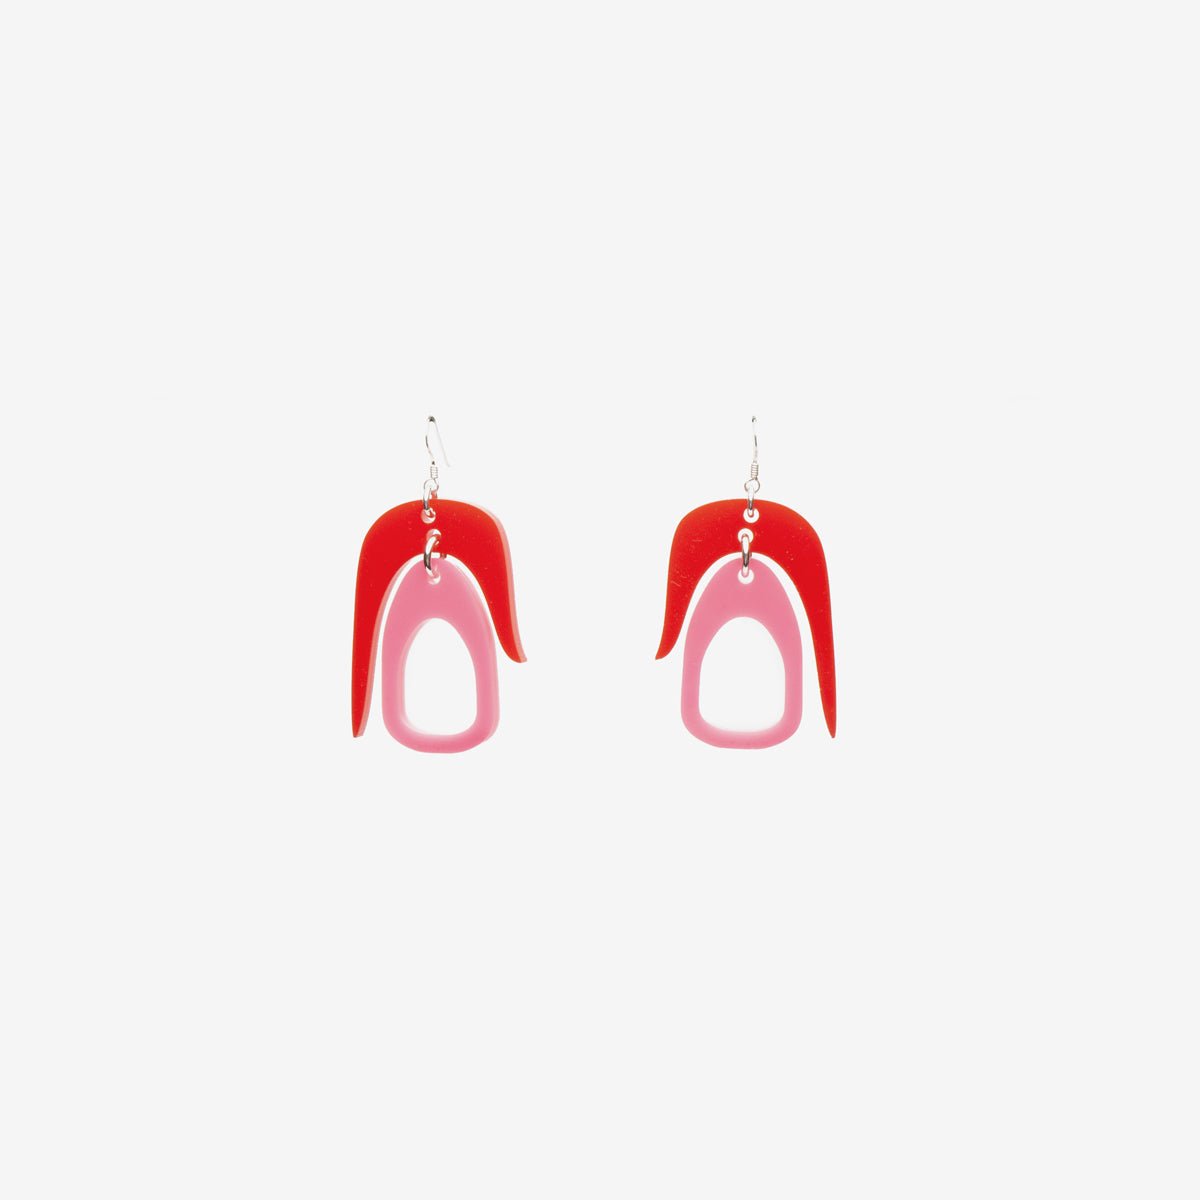 Salish Chandelier Mini Earrings in Red/Pink. Made in Canada by Warren Steven Scott.